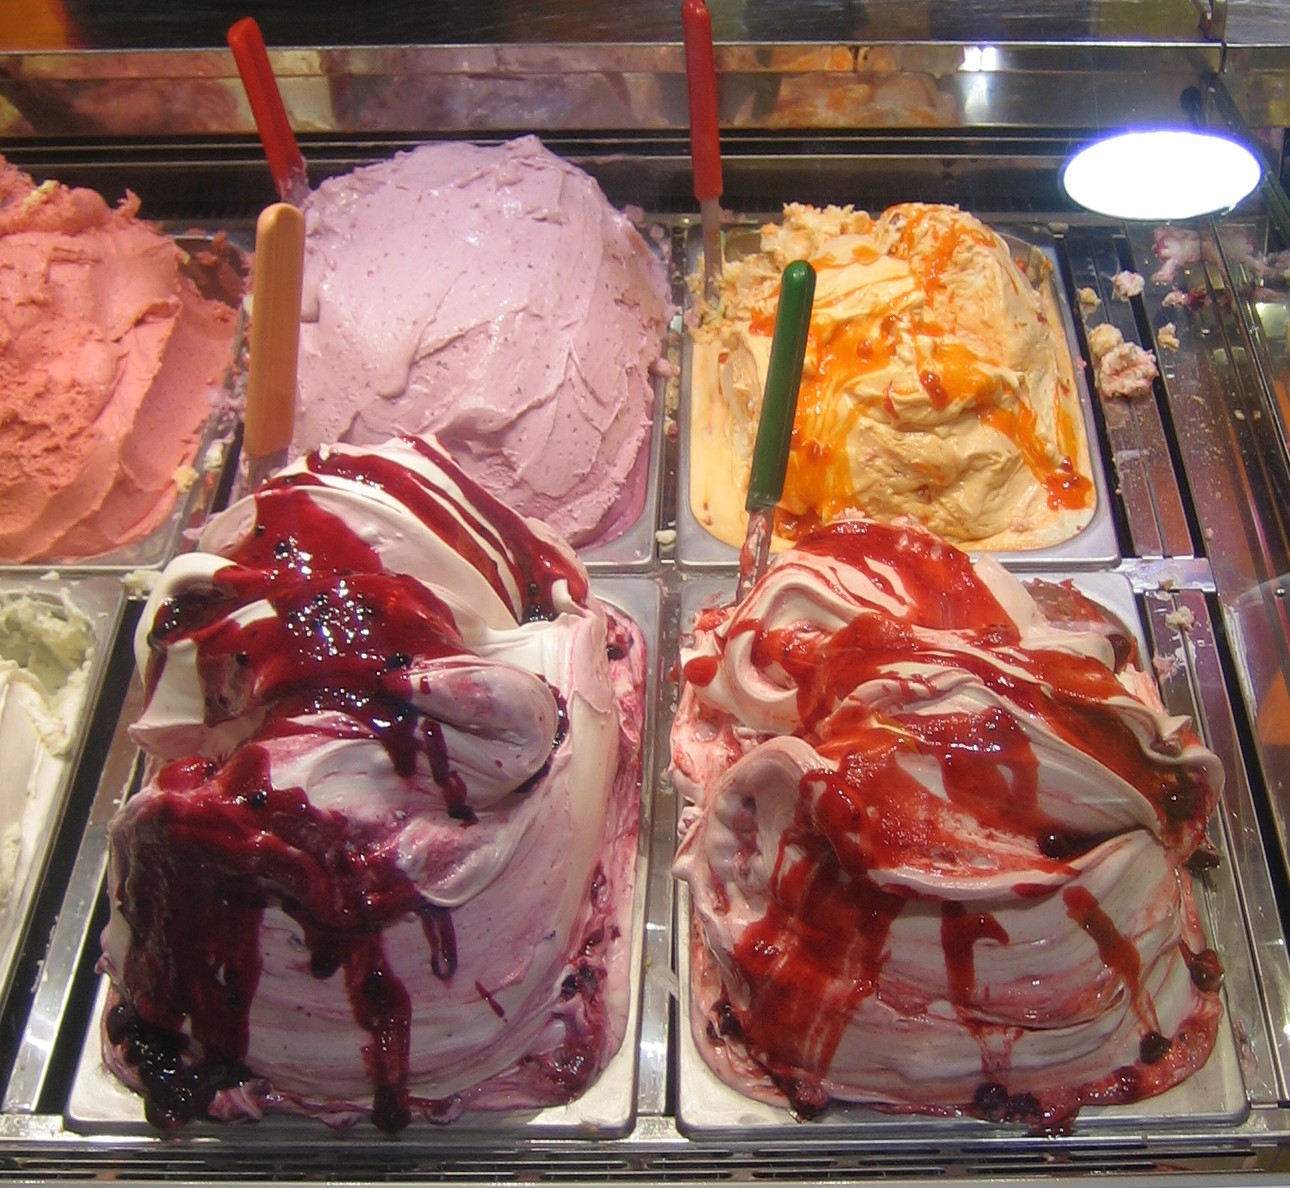 A sokat átkozott fagylalt táplálkozástudományi előnyeire hívja fel a figyelmet egy amerikai közegészségügy-történész